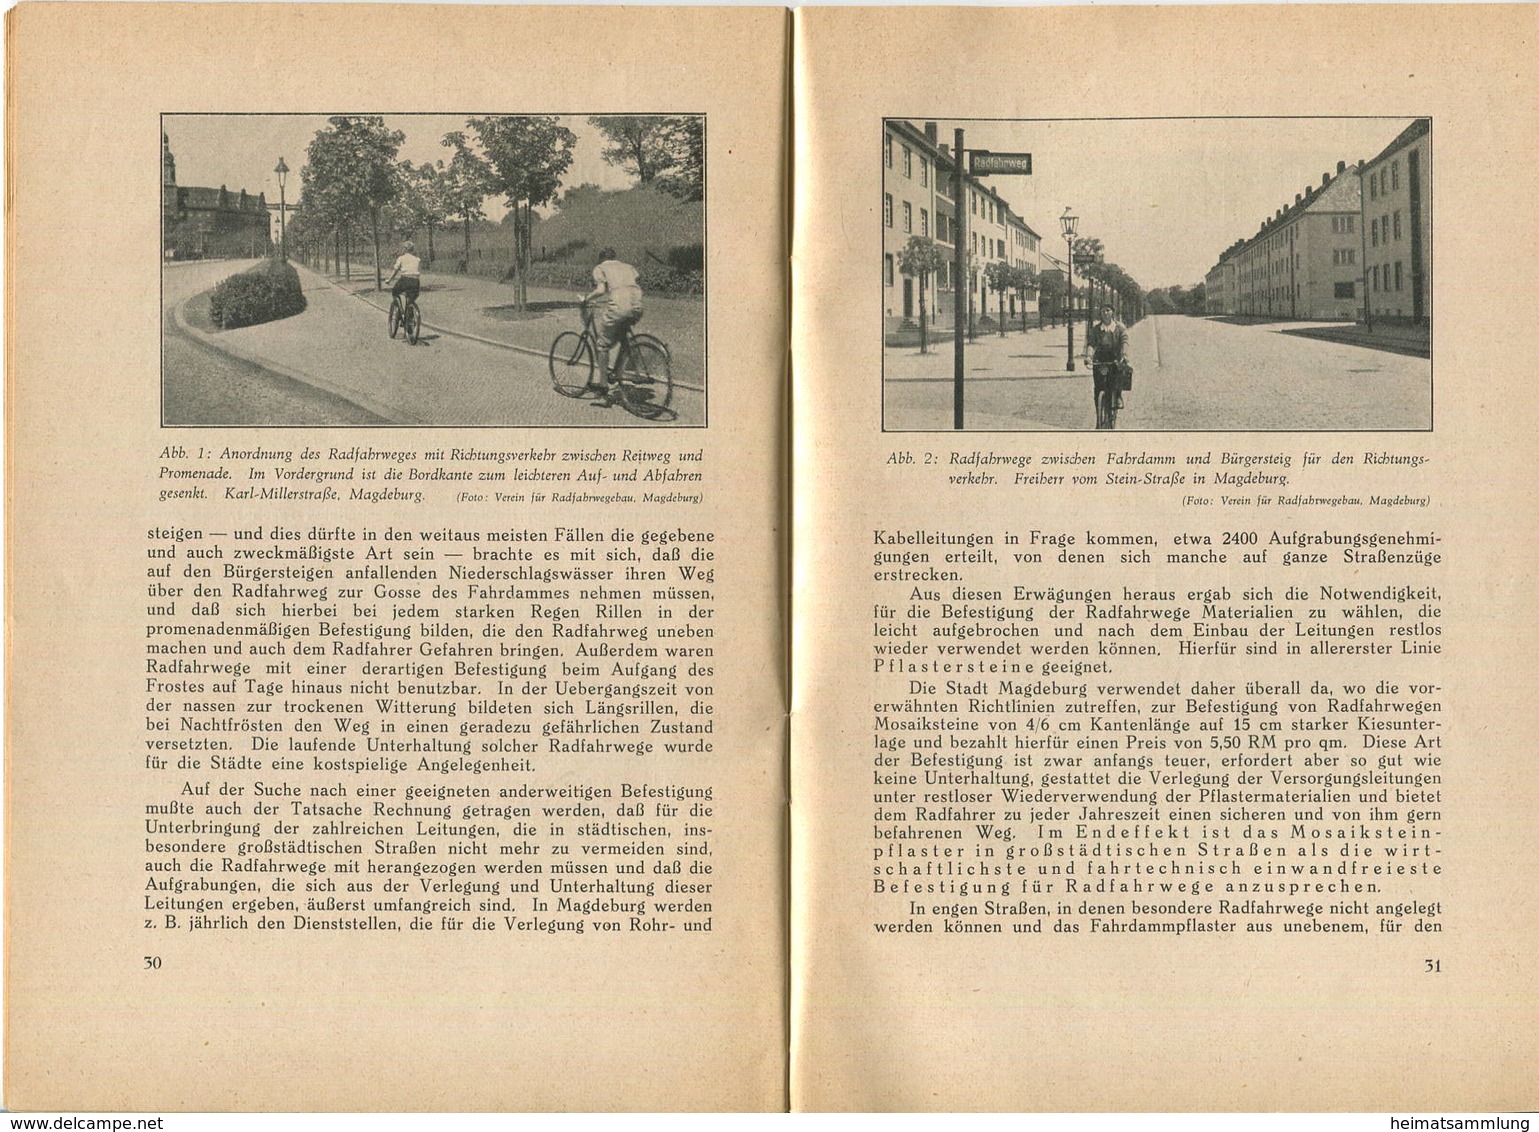 Wanderausstellung Der Reichsgemeinschaft Für Radfahrwegebau 1936 - Deutschland Braucht Radfahrwege - Protektor Dr. Ing. - Transport